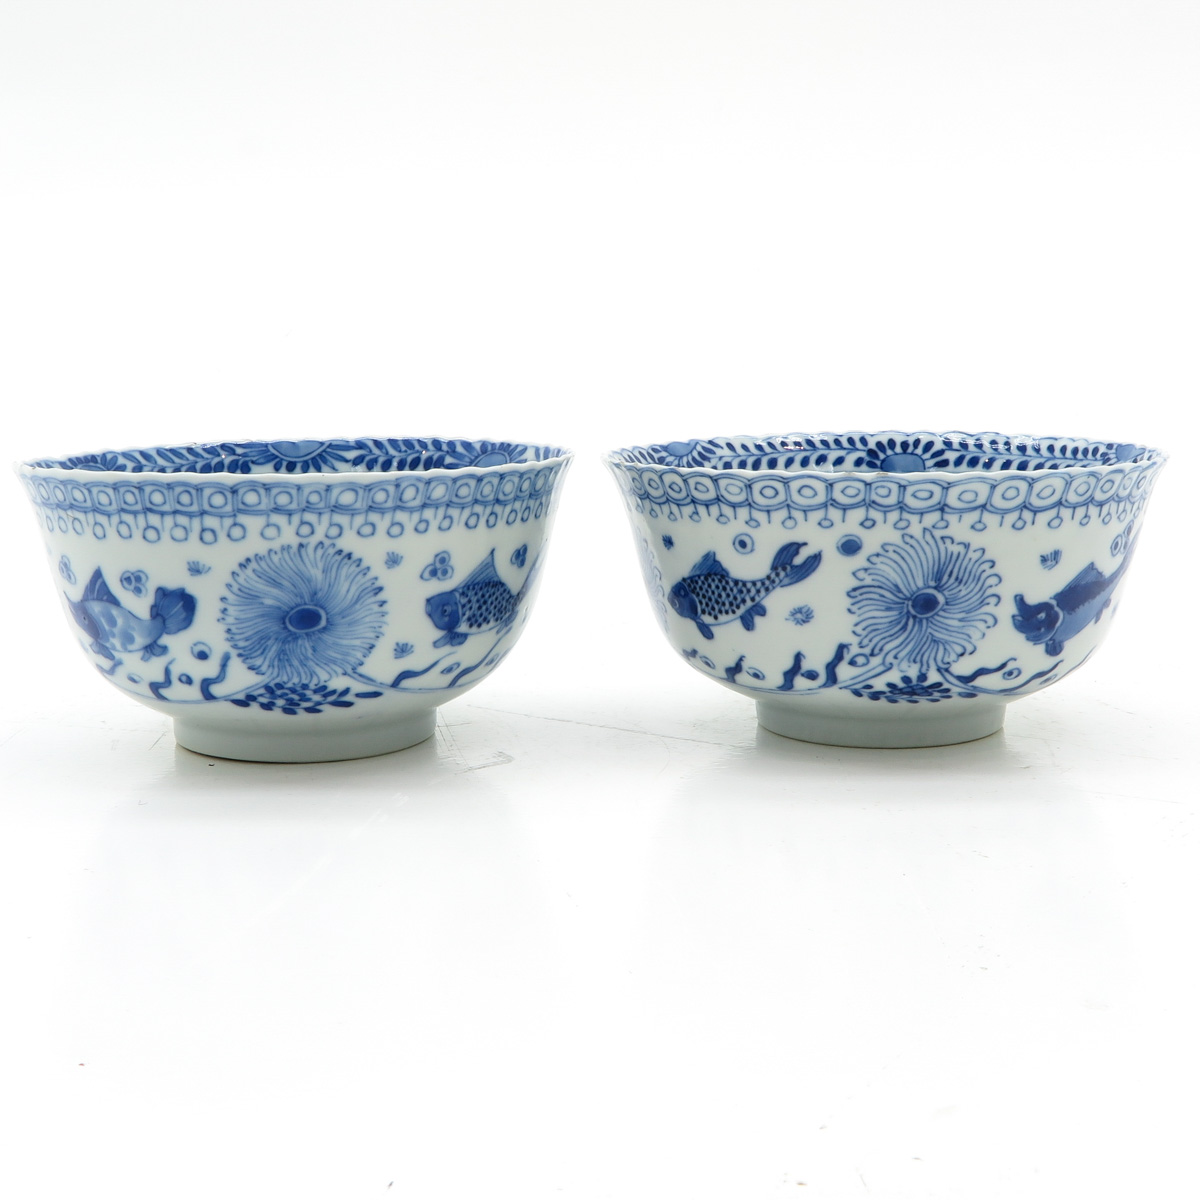 Lot of 2 China Porcelain Bowls - Bild 3 aus 6